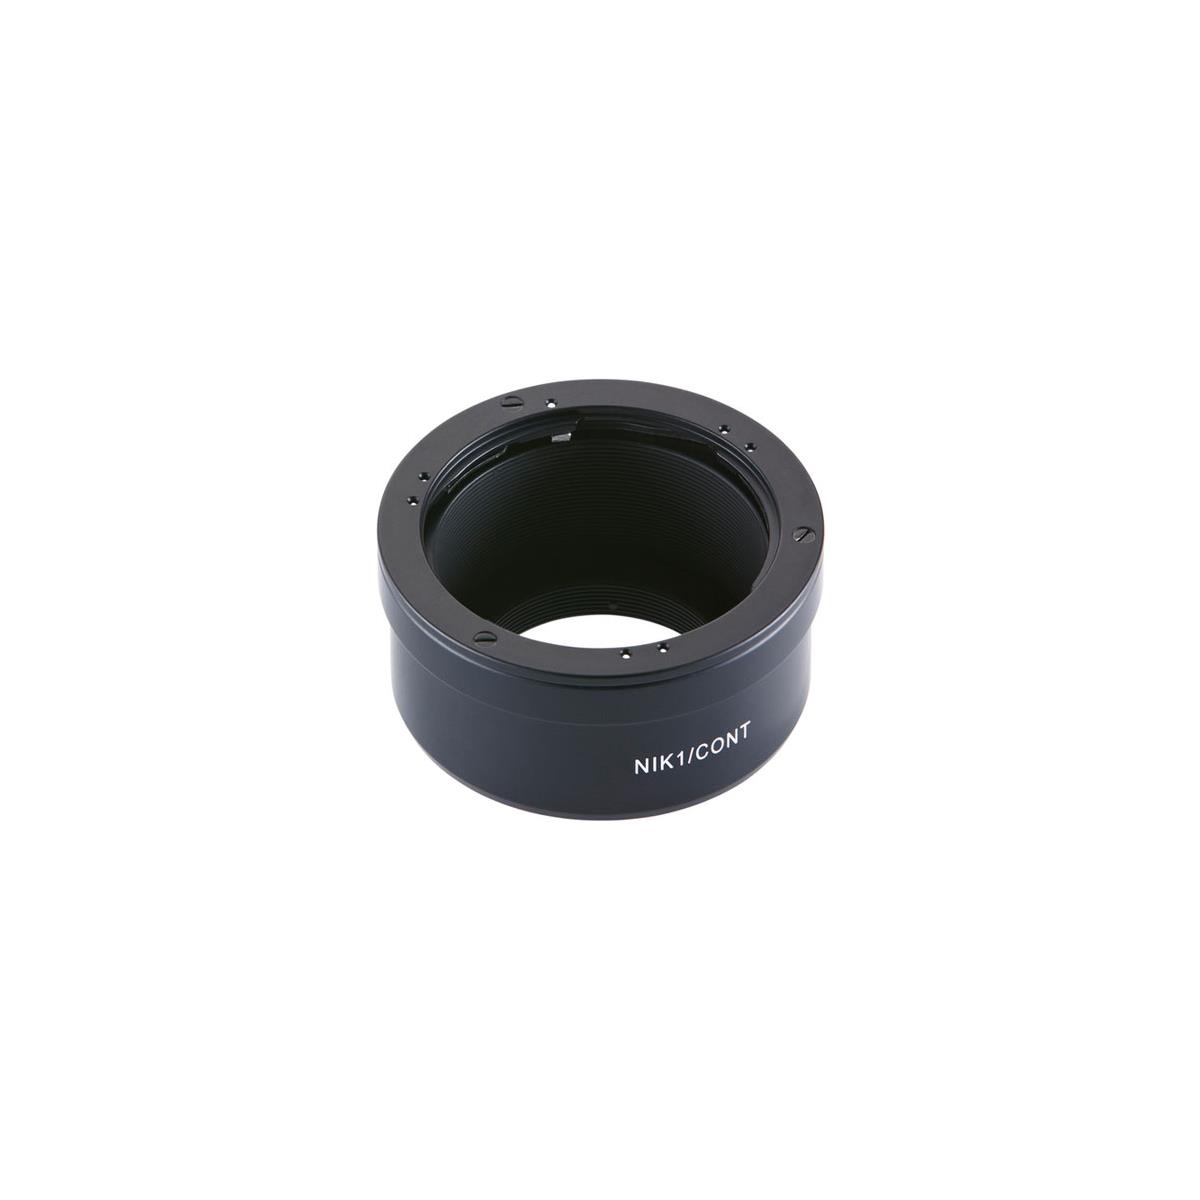 Image of Novoflex Adapter for Contax/Yashica Lenses to Nikon 1 Cameras